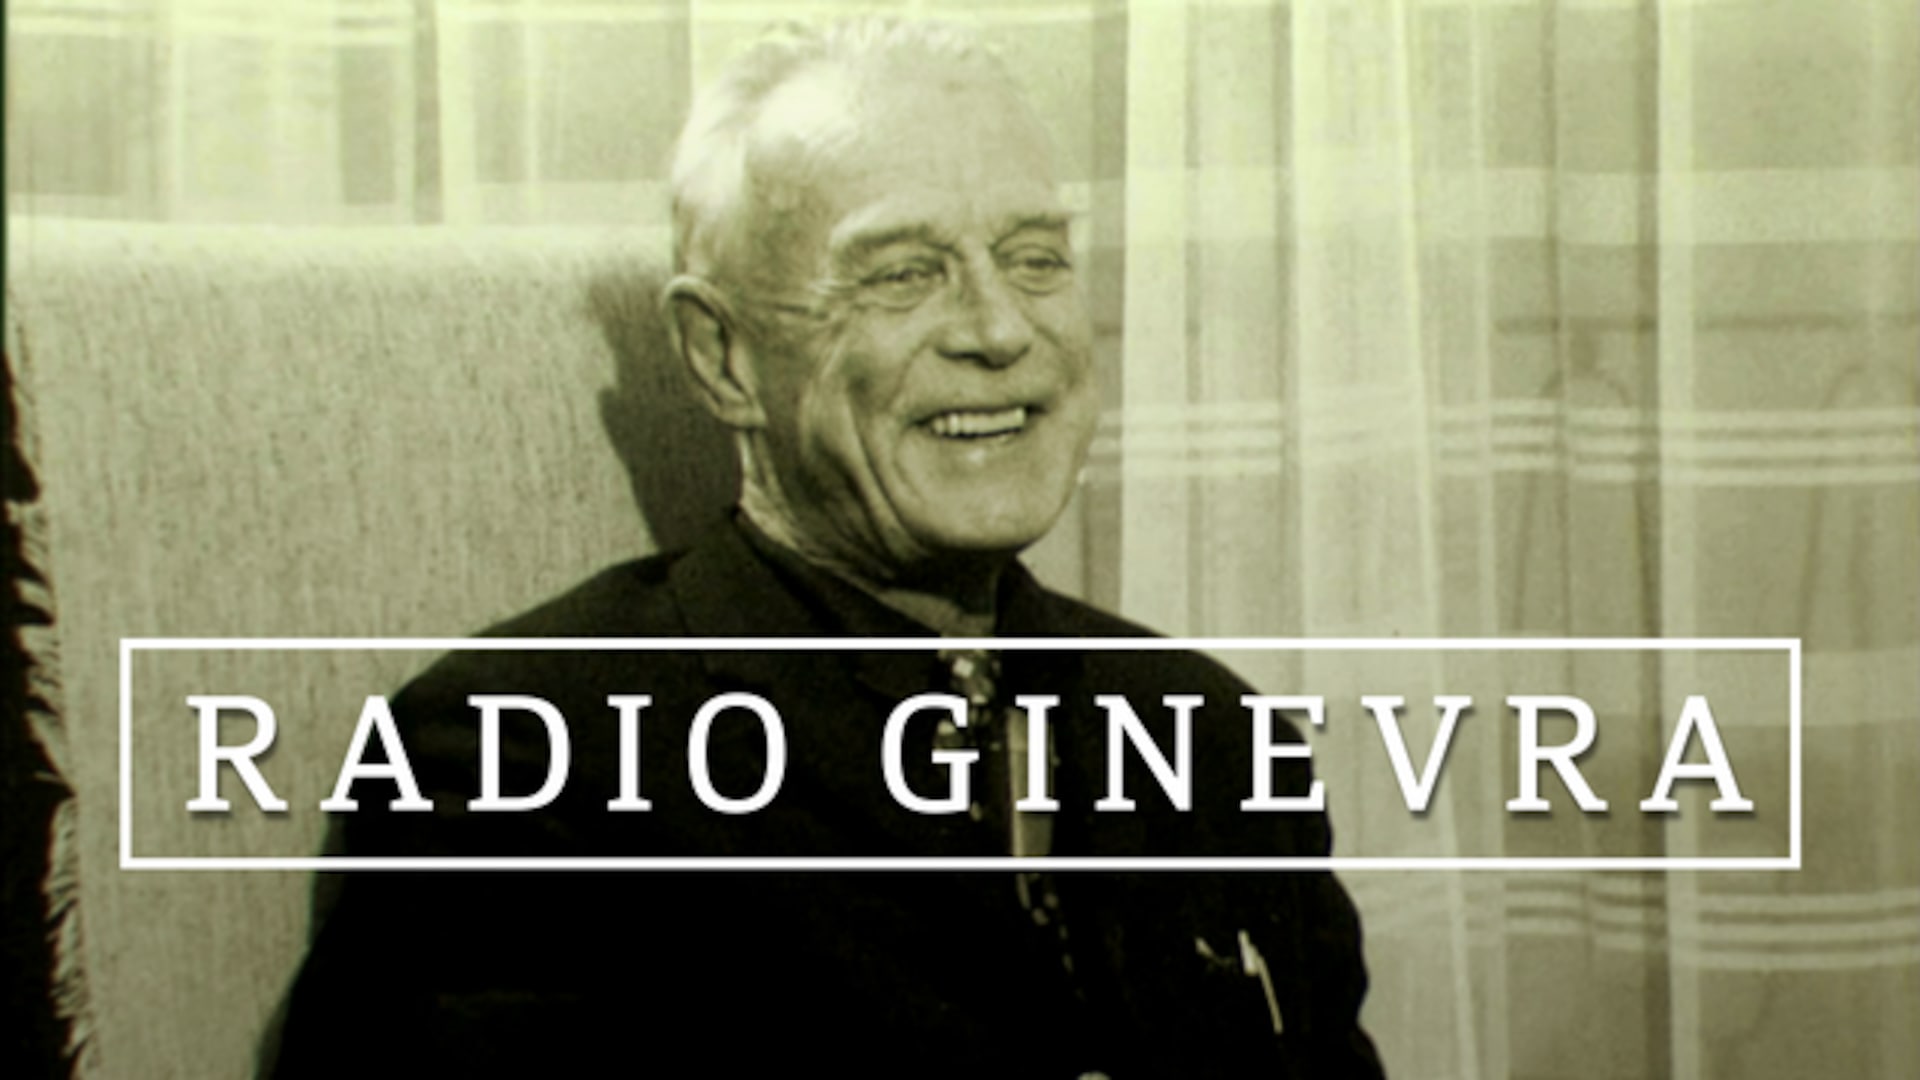 Radio Ginevra